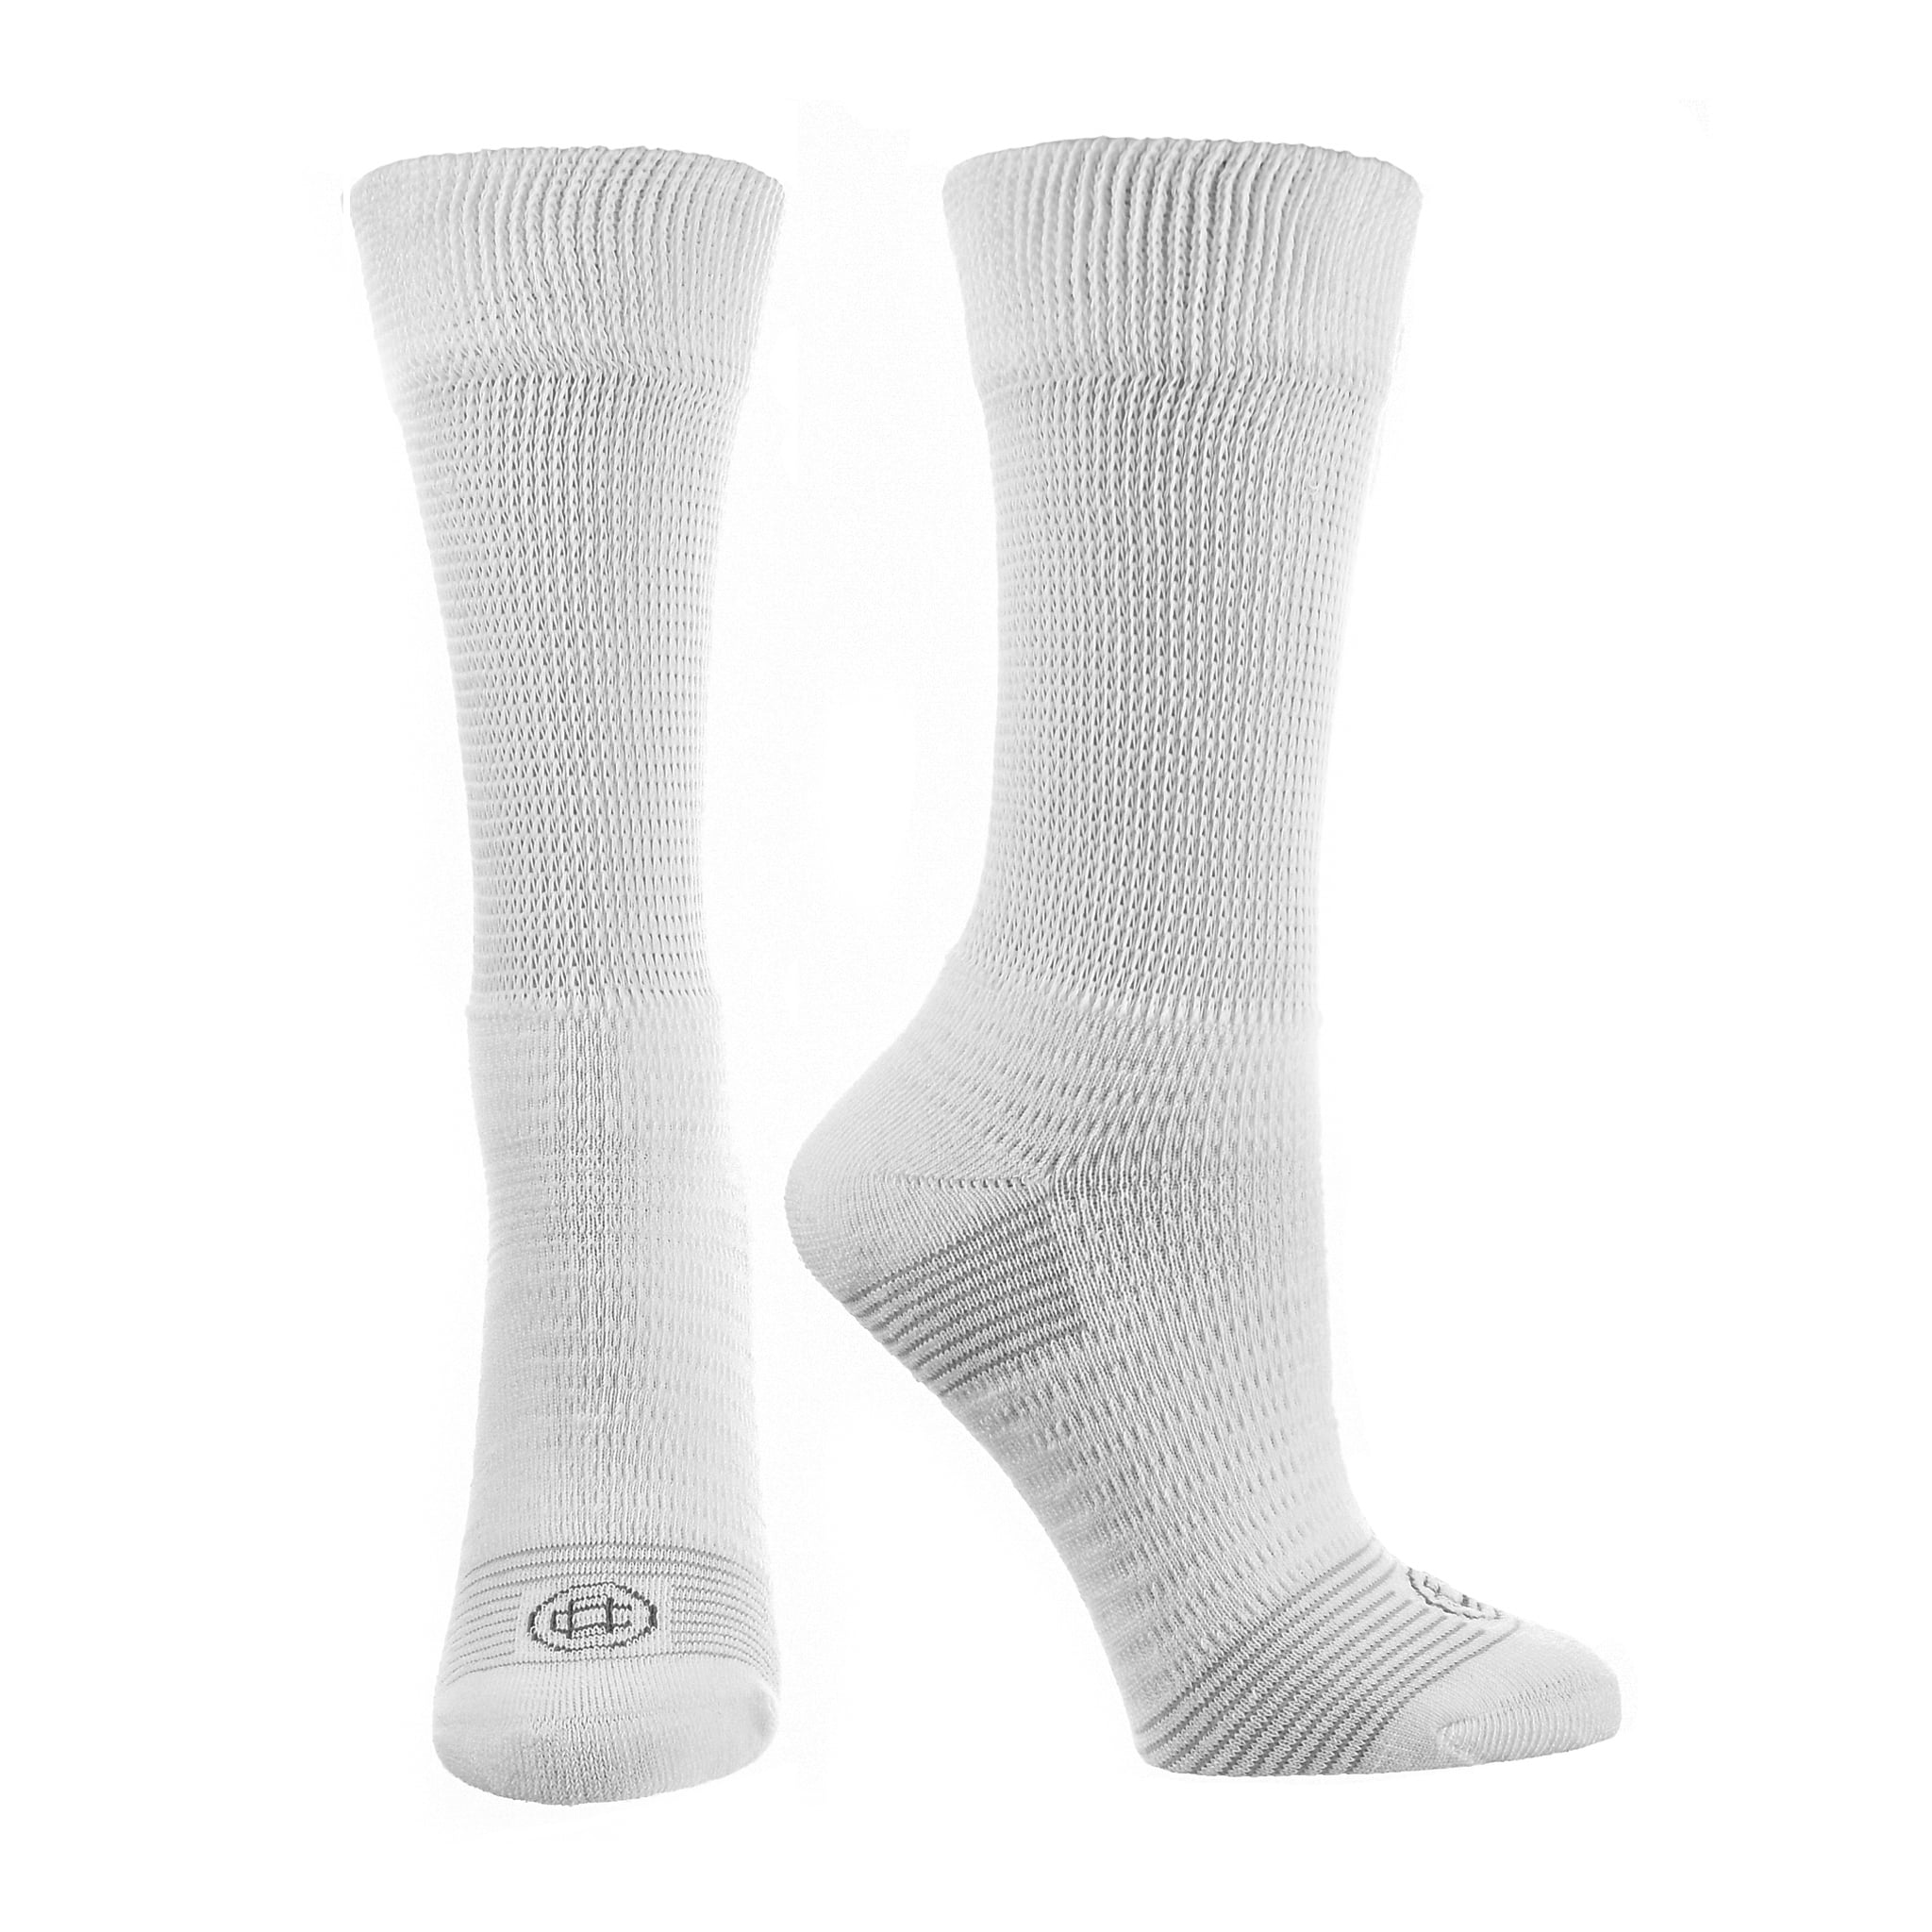 Doctor's Choice Diabetic Socks for Men, Neuropathy Socks for Men, Non ...